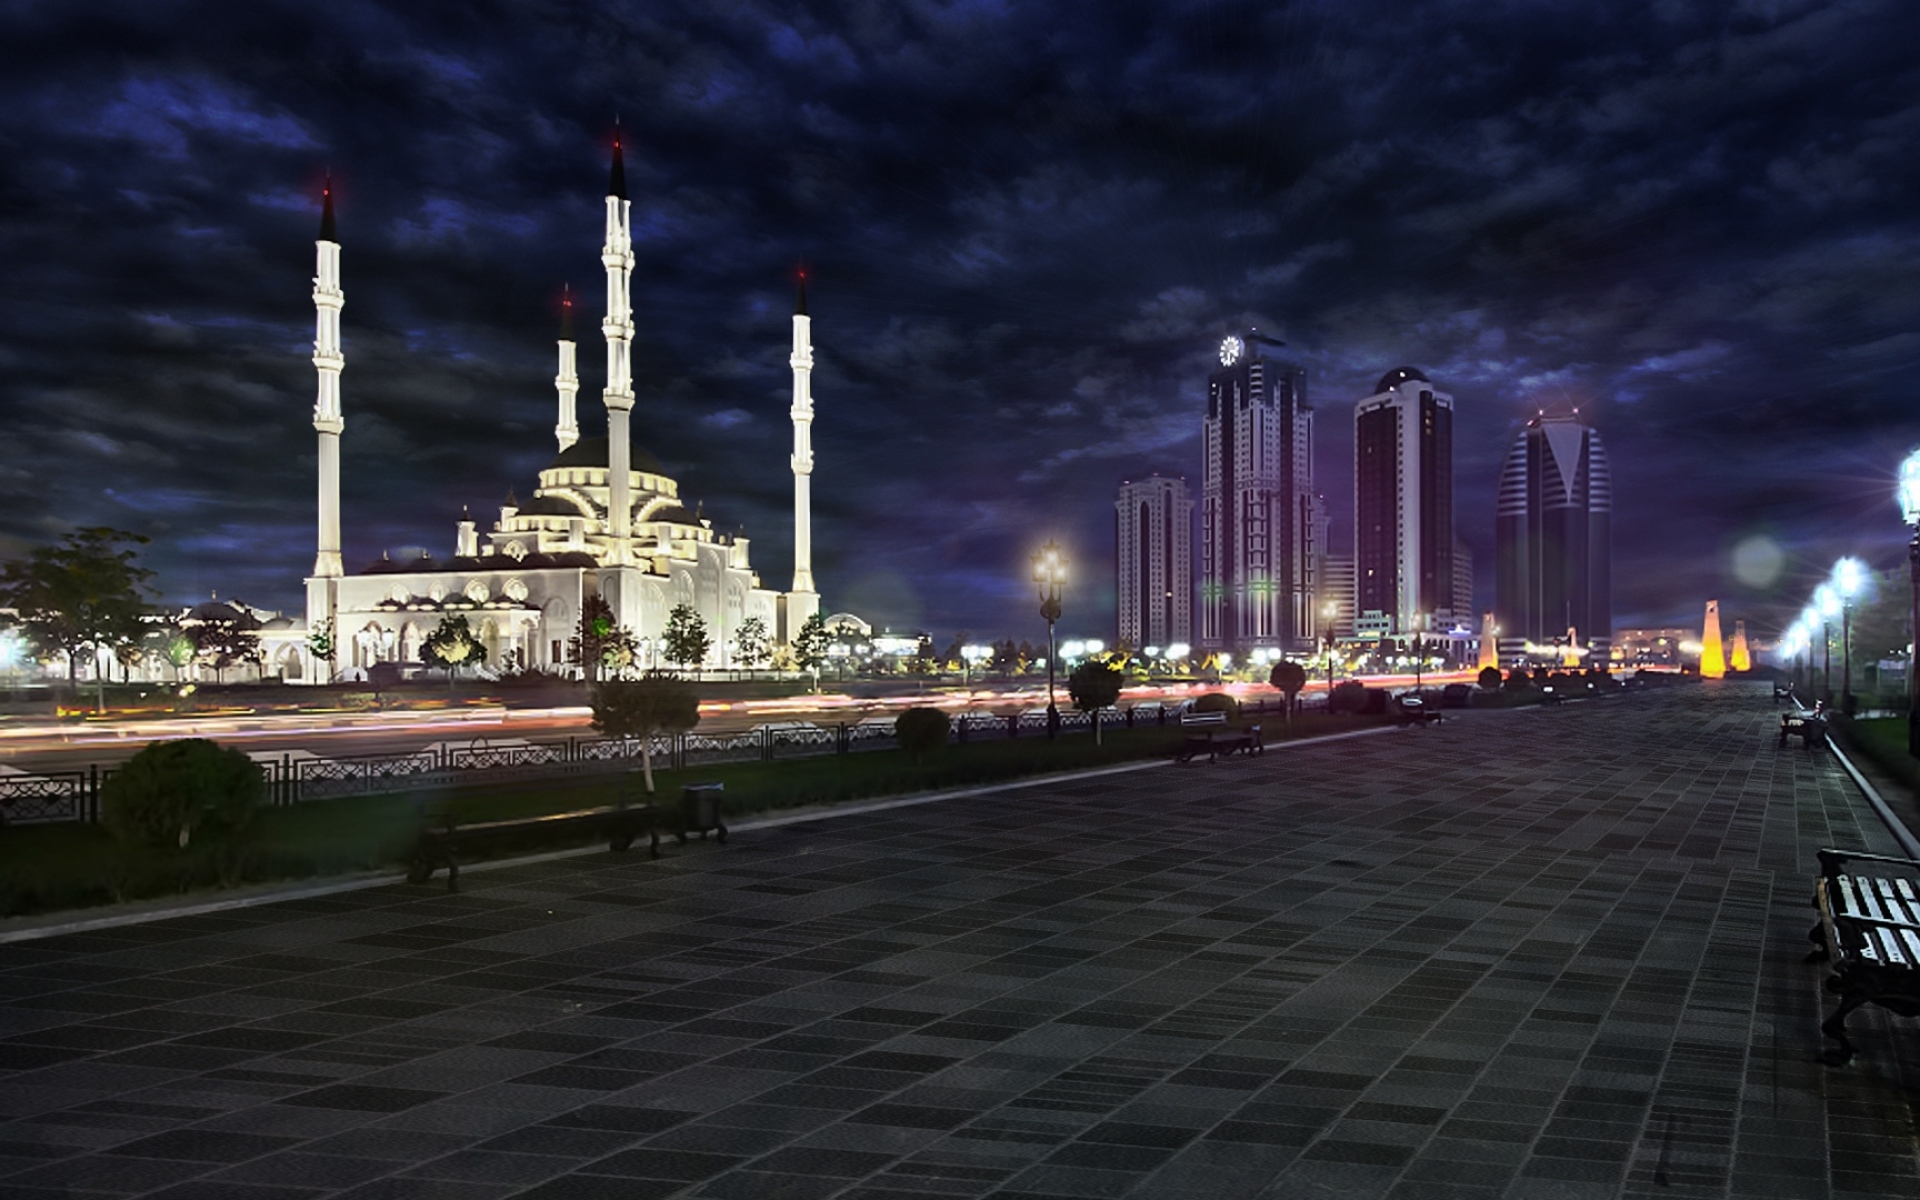 Картинки Грозненская, чечня, мечеть, парк, скамейка, ночной фото и обои на рабочий стол